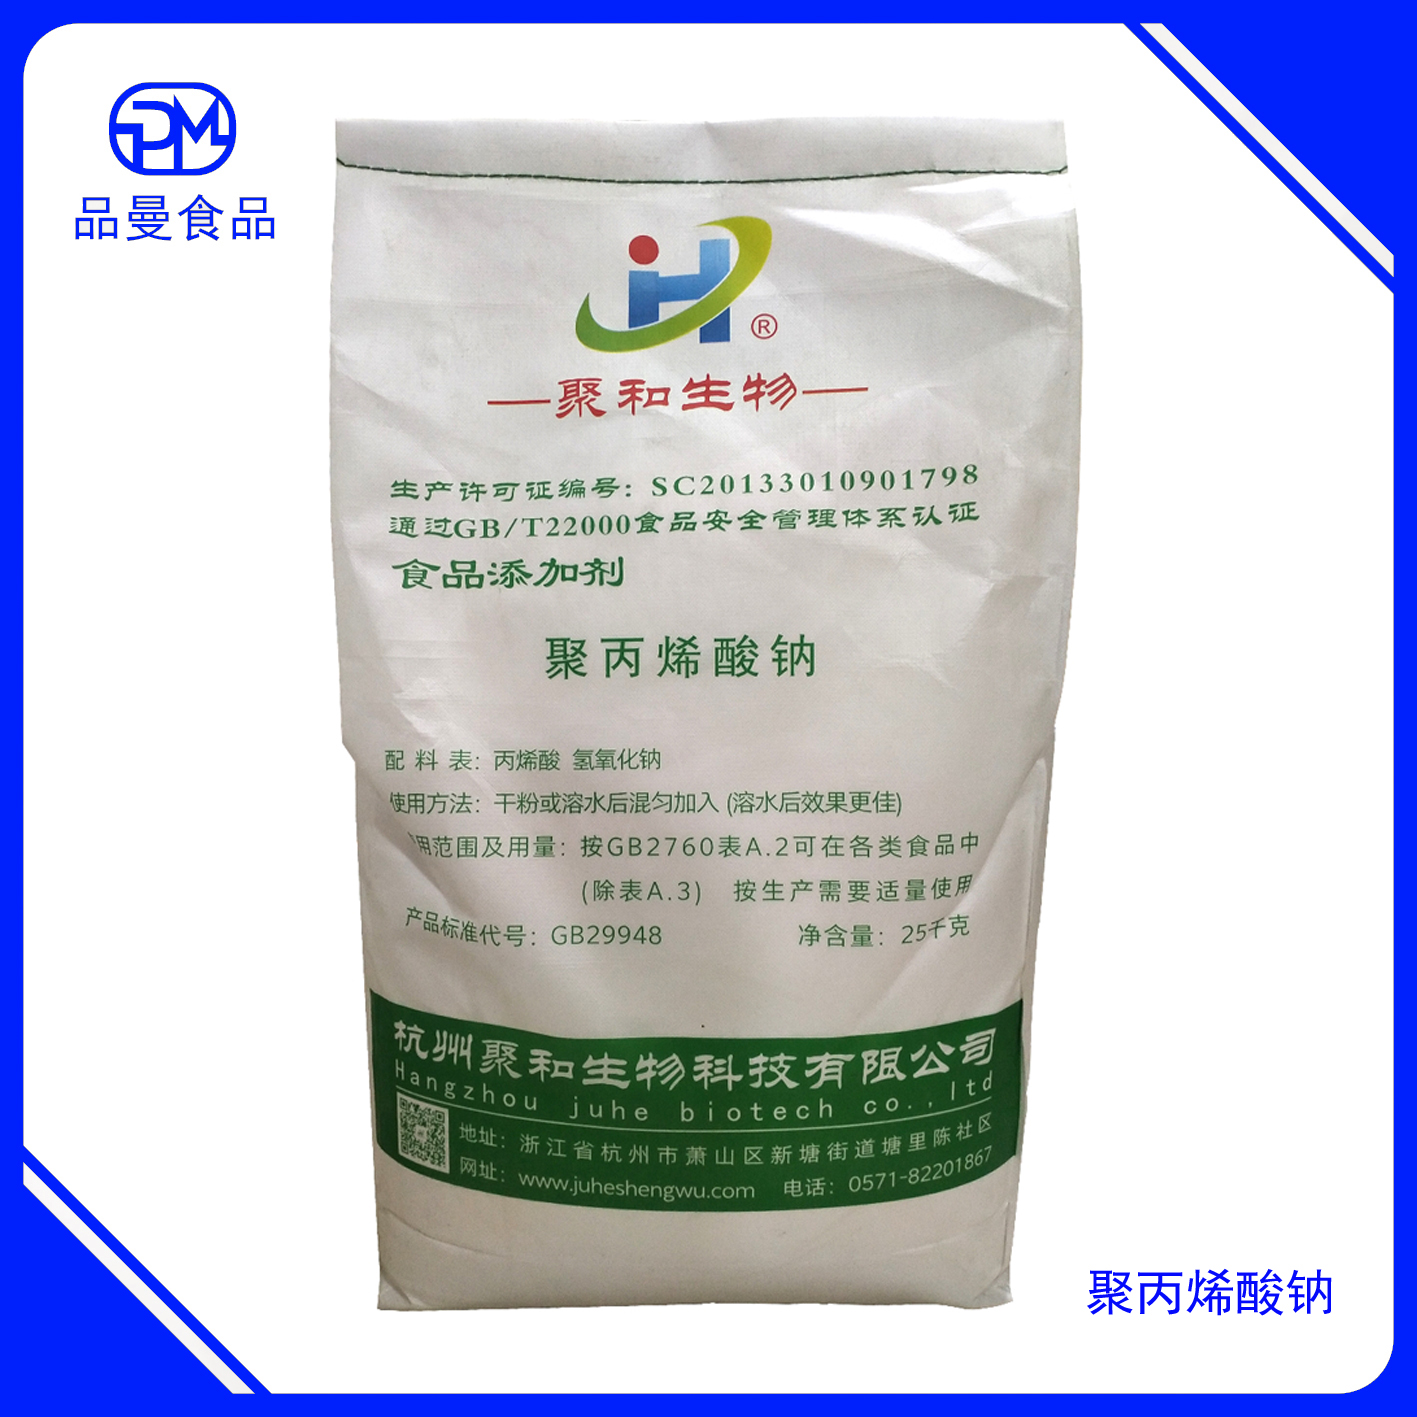 聚丙烯酸钠 食品级增稠稳定剂 杭州 聚合 25kg/袋 可零售